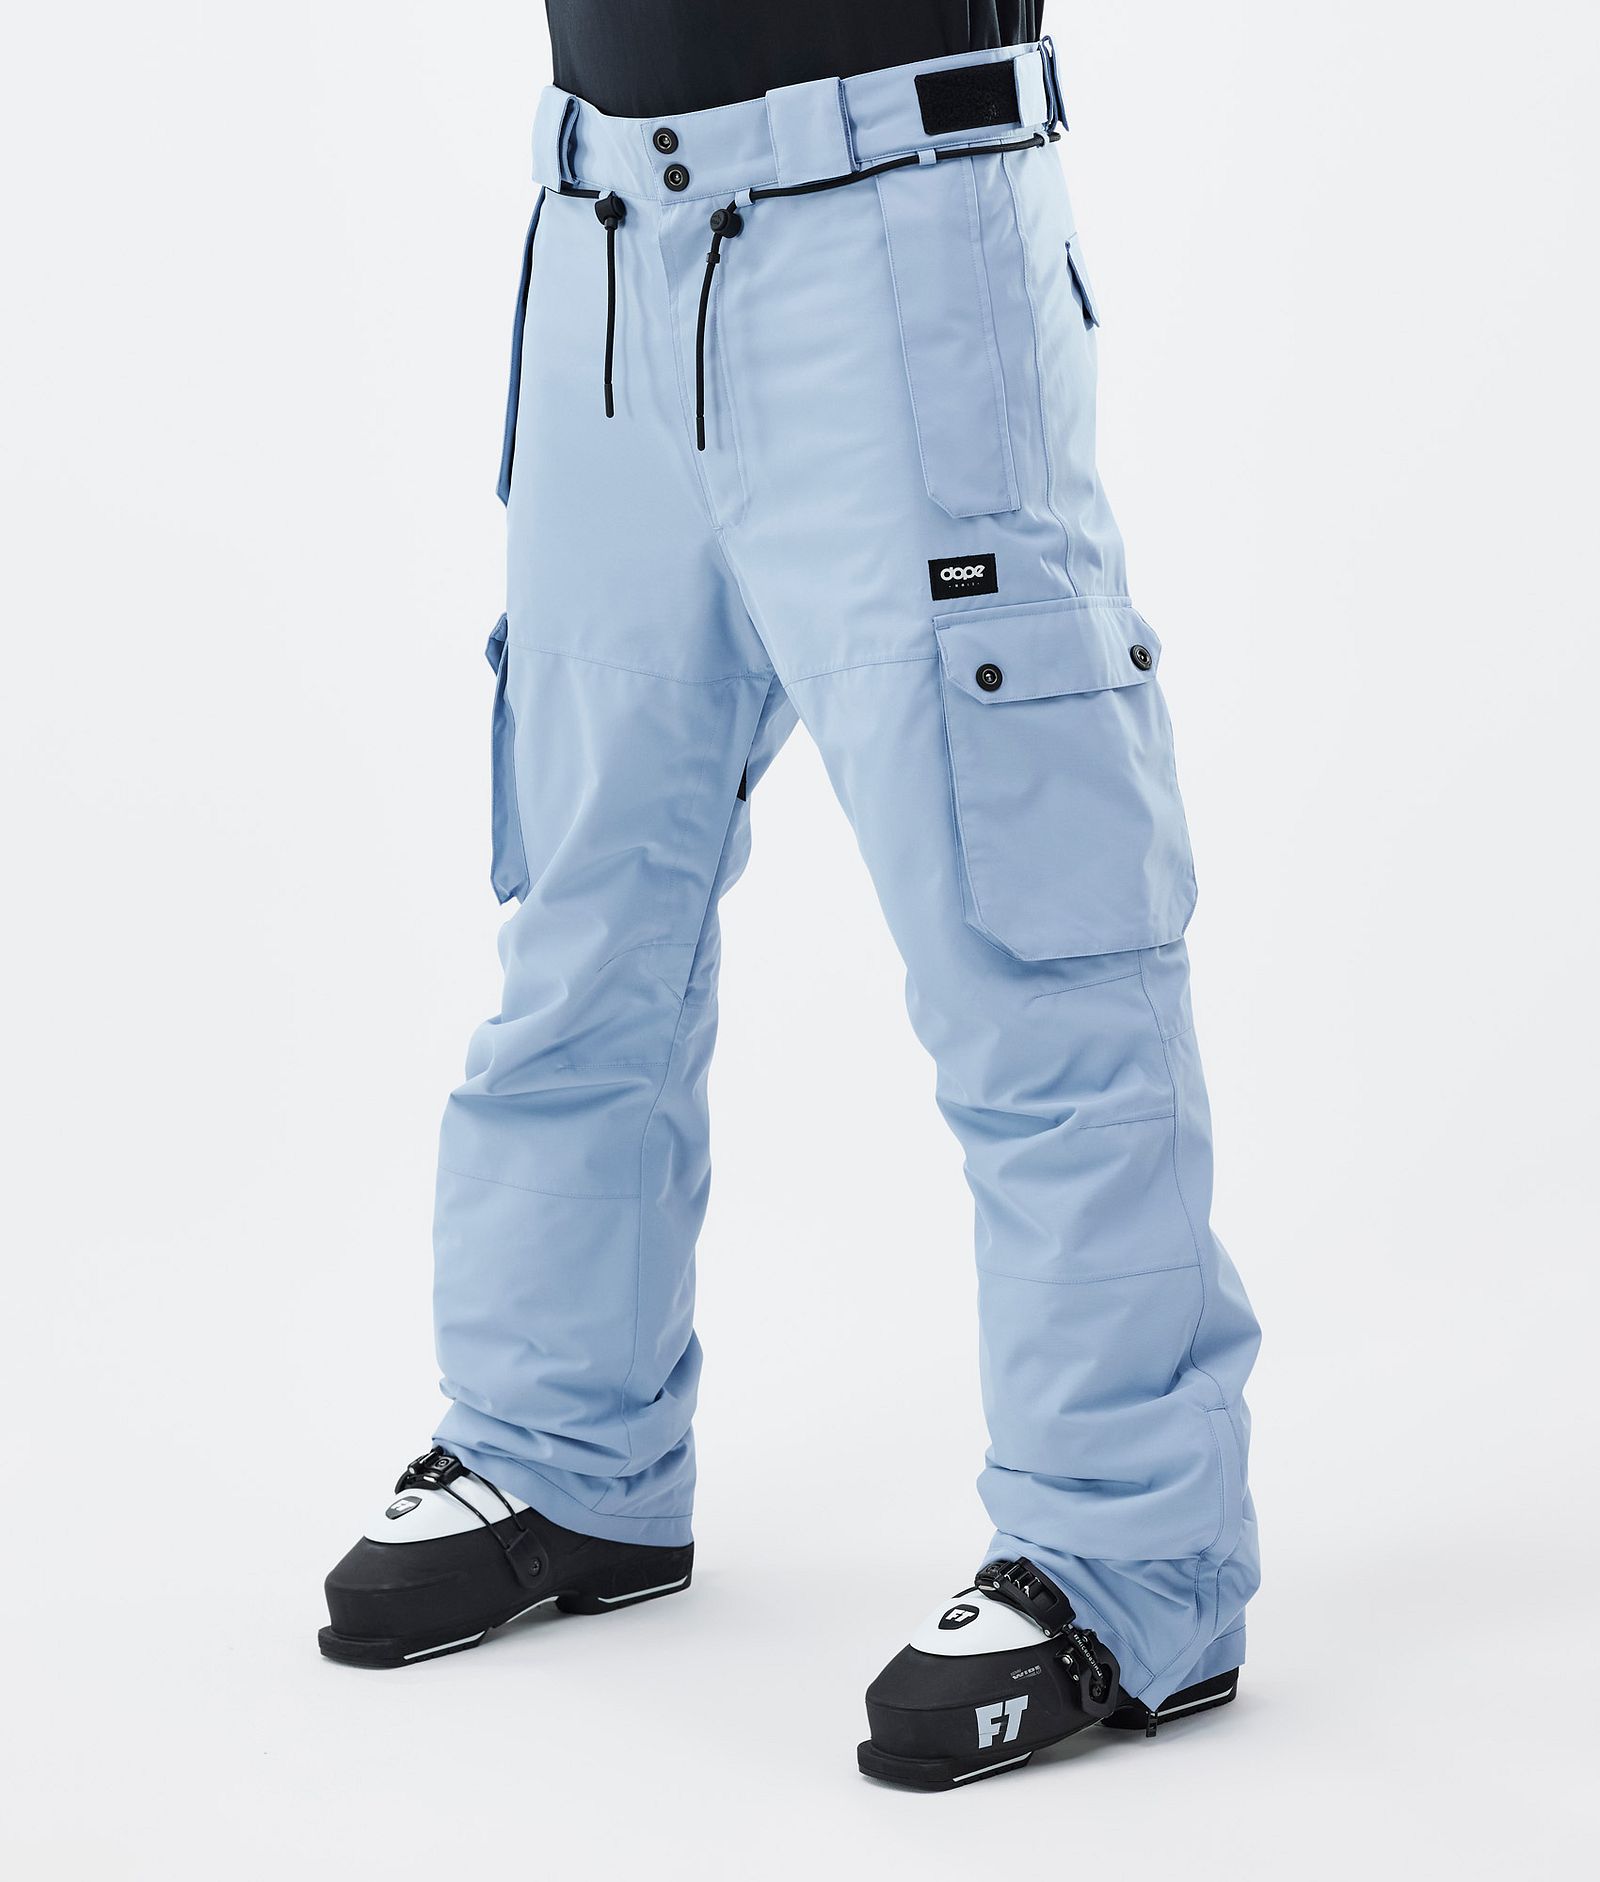 Iconic Pantaloni Sci Uomo Light Blue, Immagine 1 di 7